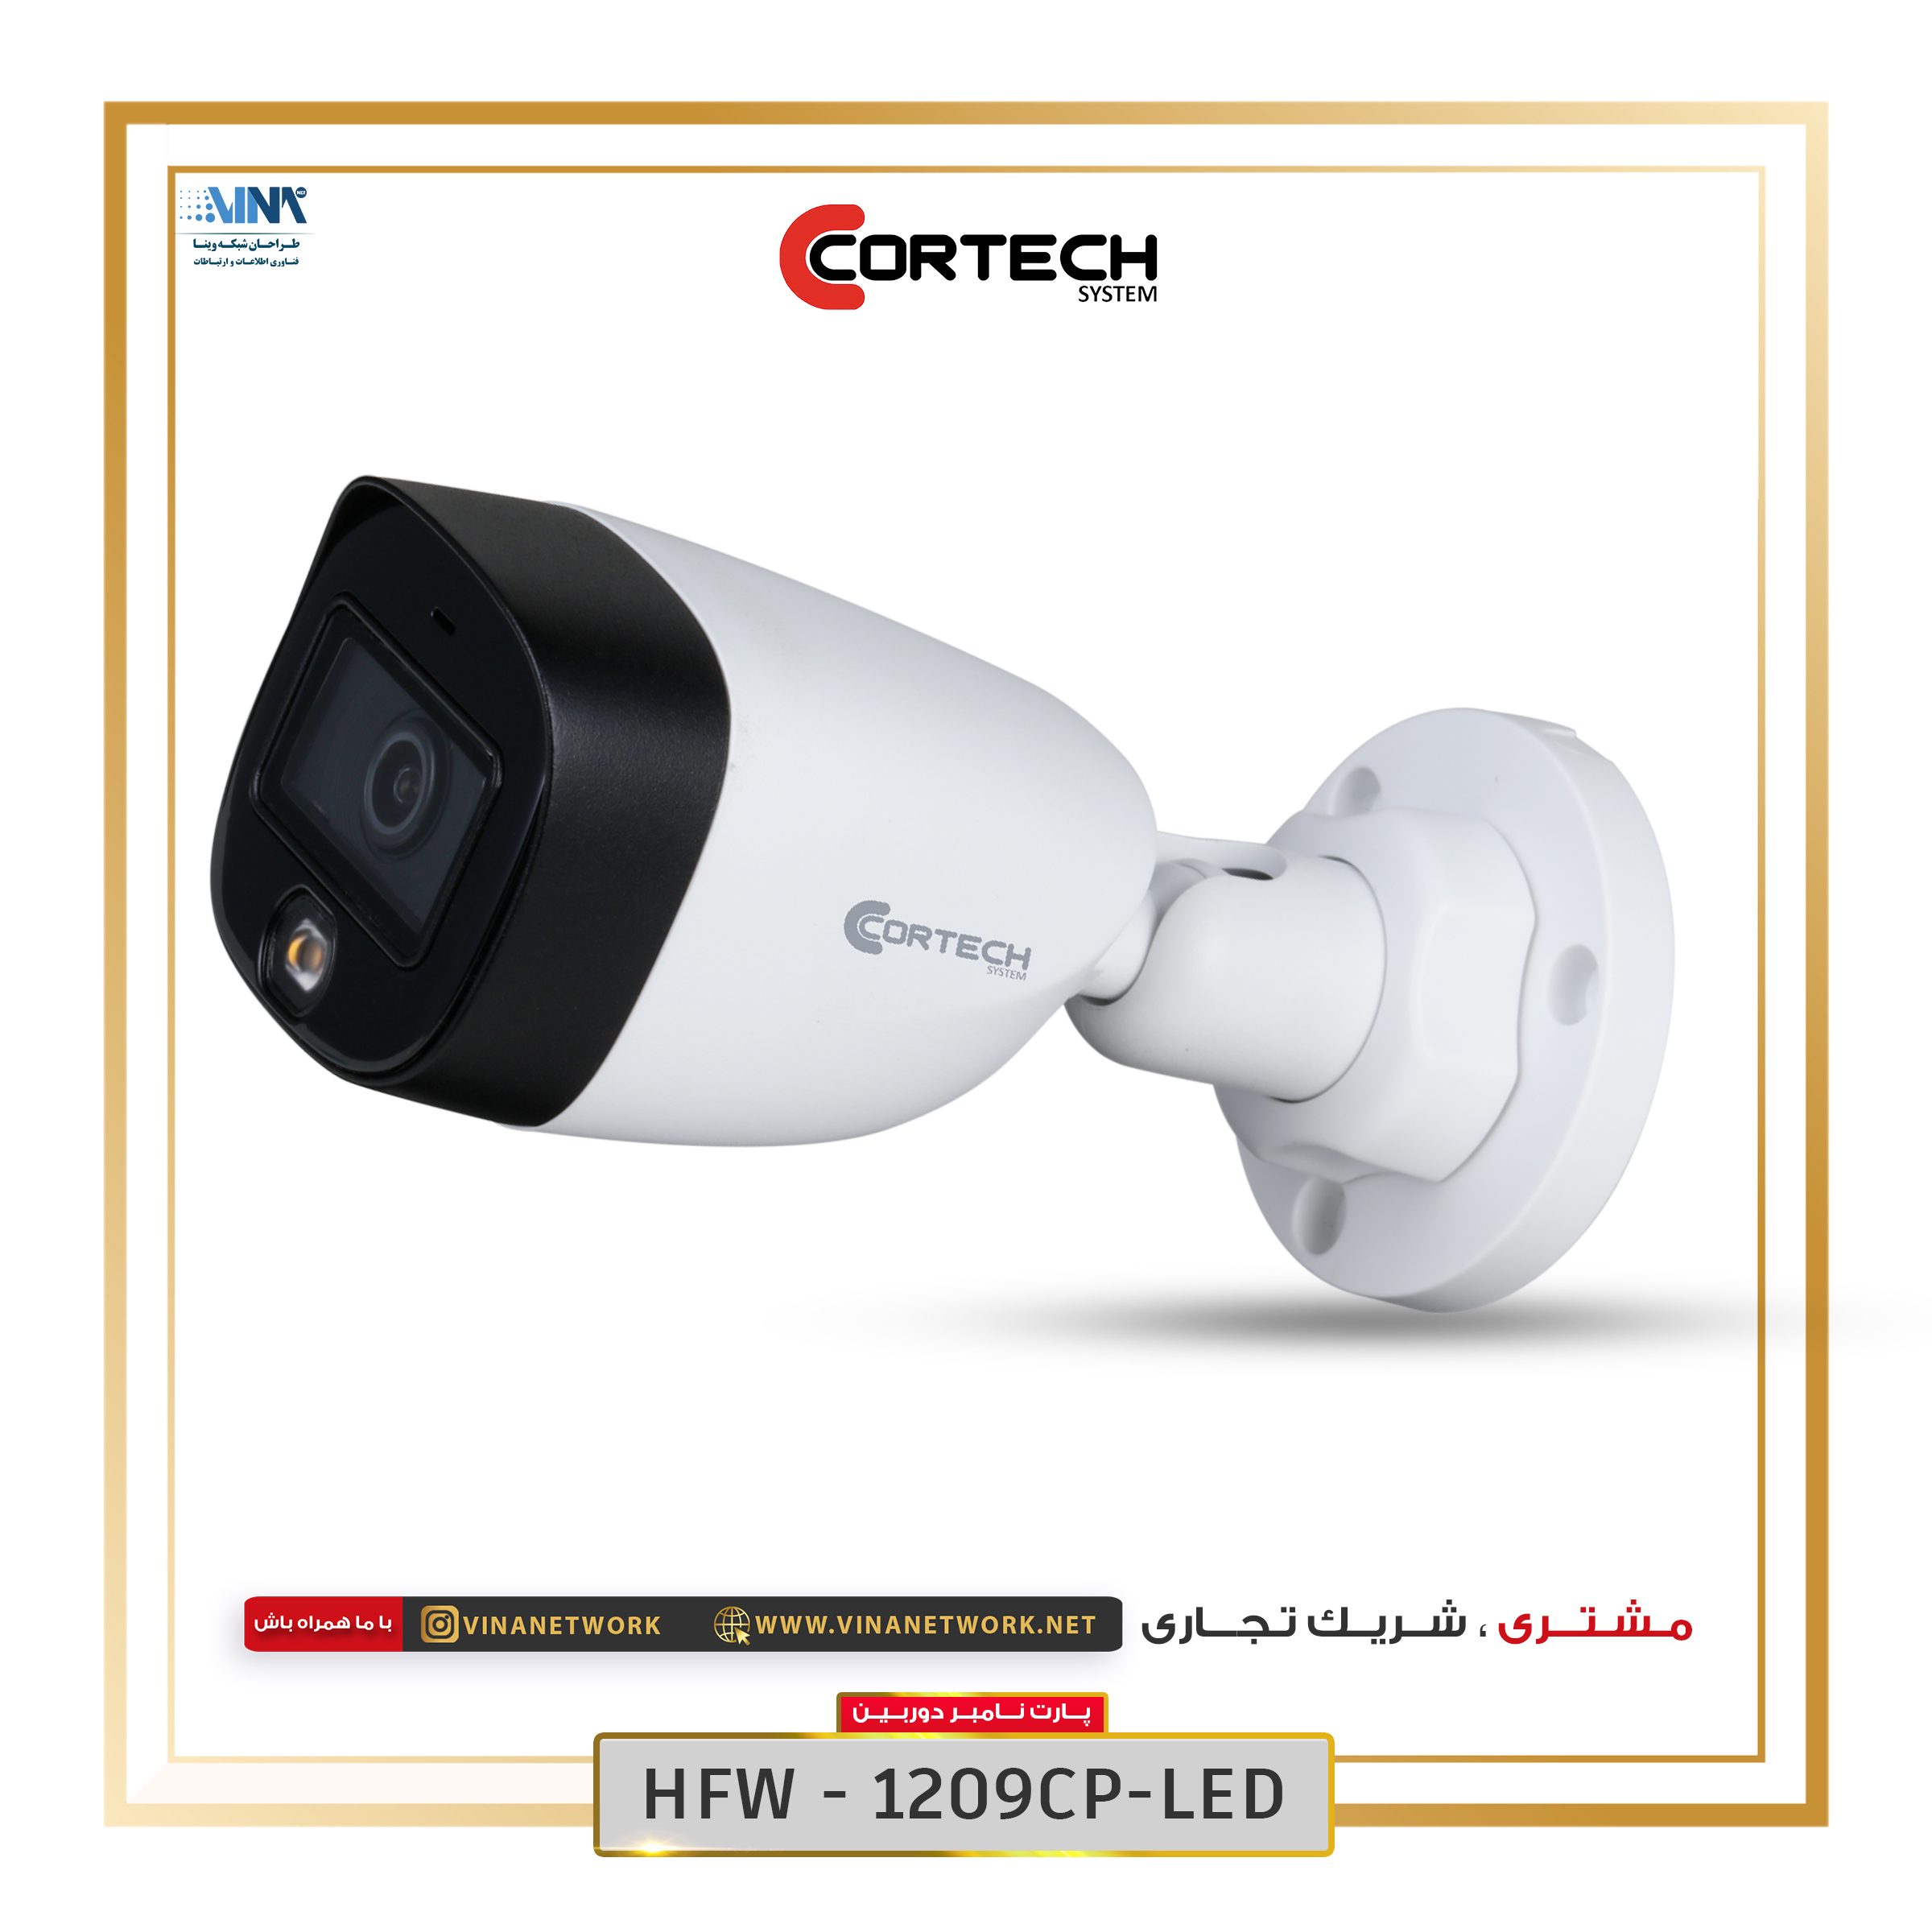 دوربین کورتک مدل HFW1209CP-LED